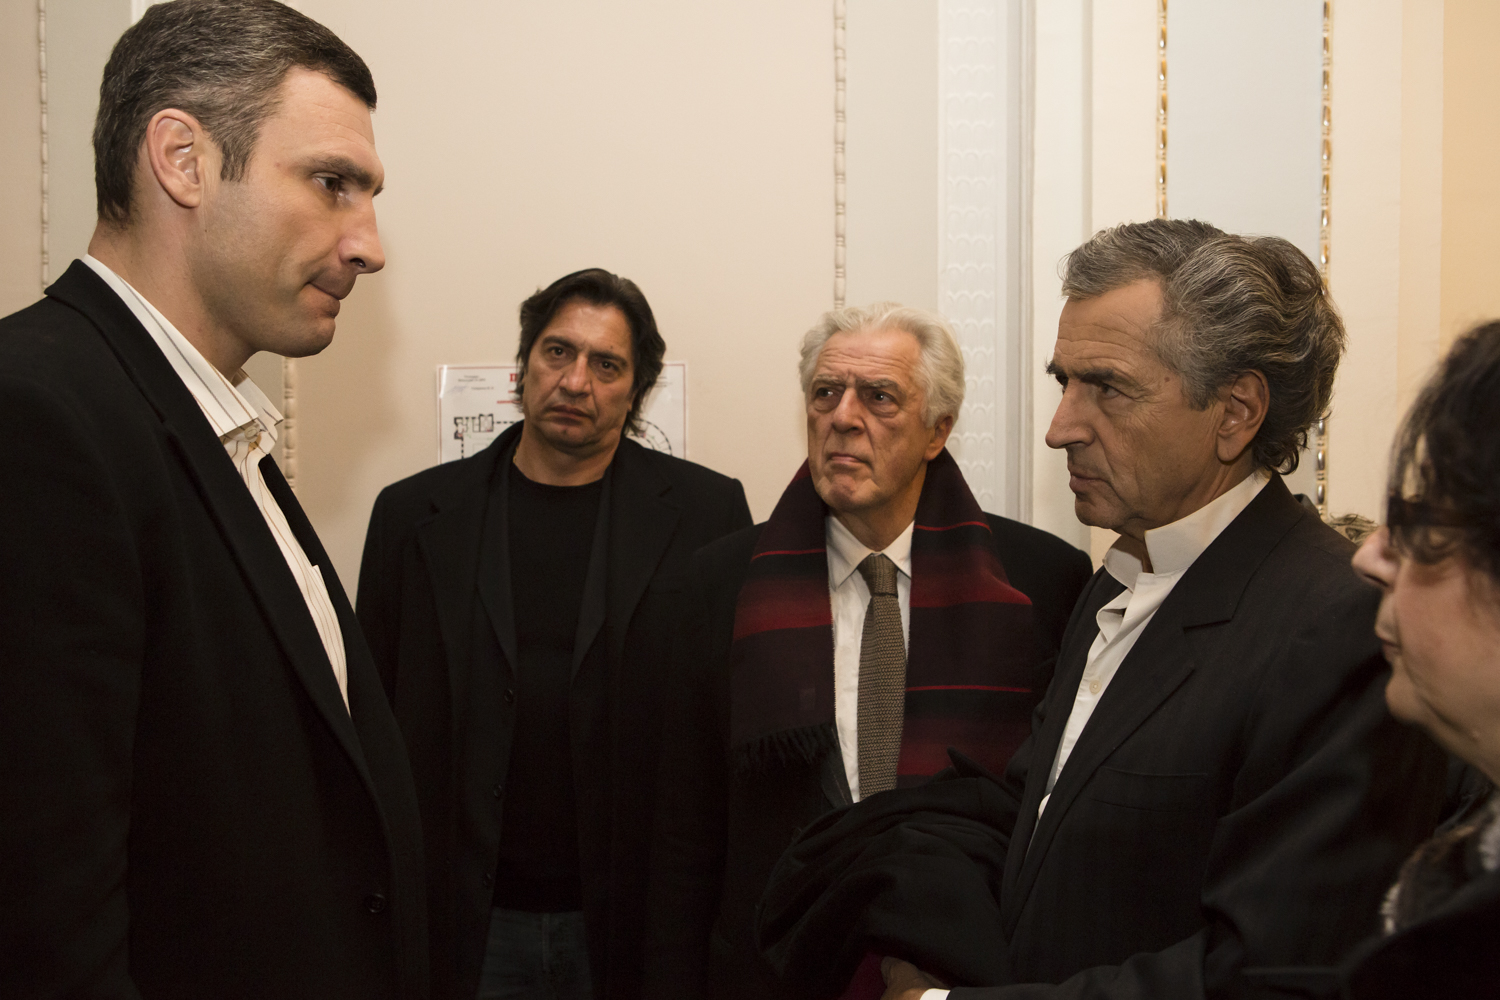 Rencontre entre Bernard-Henri Levy et Vitali Klitschko à la Rada centrale (Parlement ukrainien), à Kiev le 1er mars 2014, sous le regard de Gilles Hertzog et Galia Ackerman.